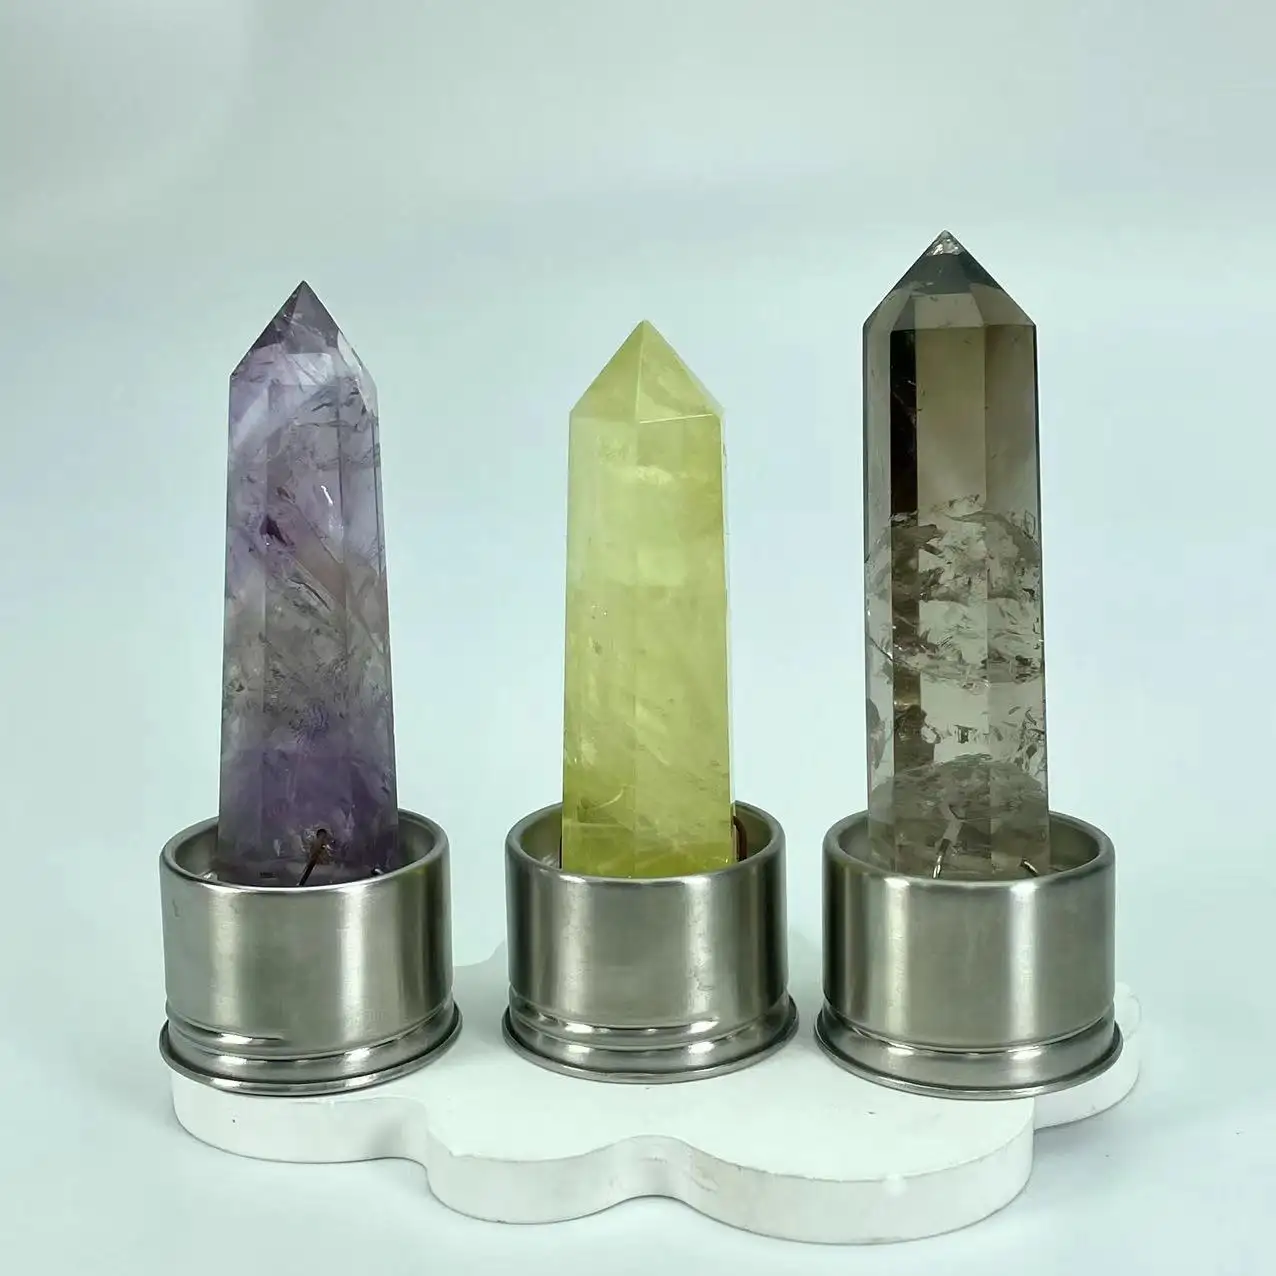 Recién llegados inserto de cristal espiritual piedras curativas natural ahumado amatista citrino inserto de cristal de cuarzo para regalo